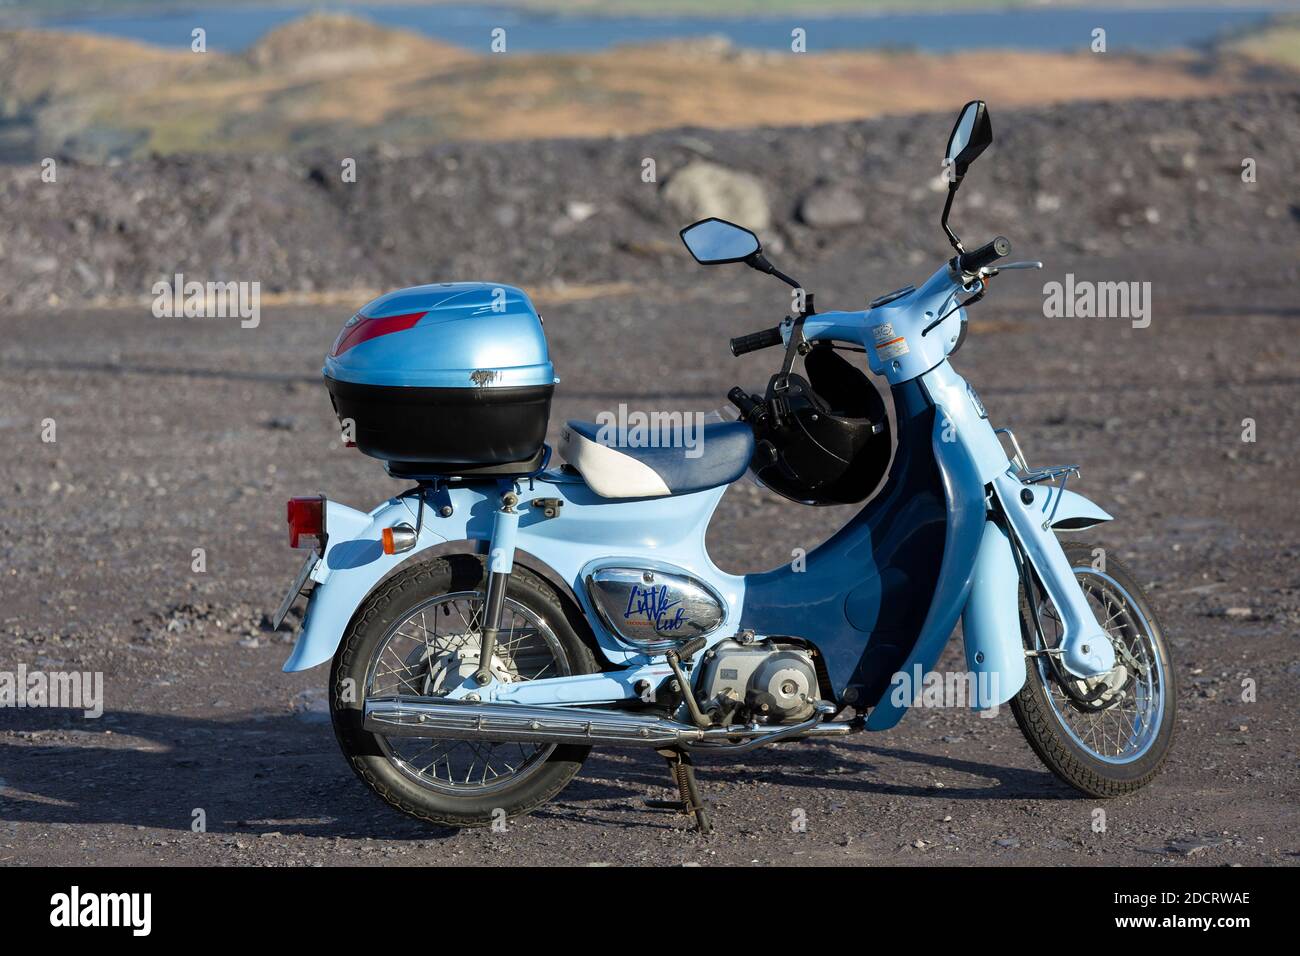 Honda Little Cub c50 ciclomotor en la isla de Valentia, Condado de Kerry, Irlanda Foto de stock